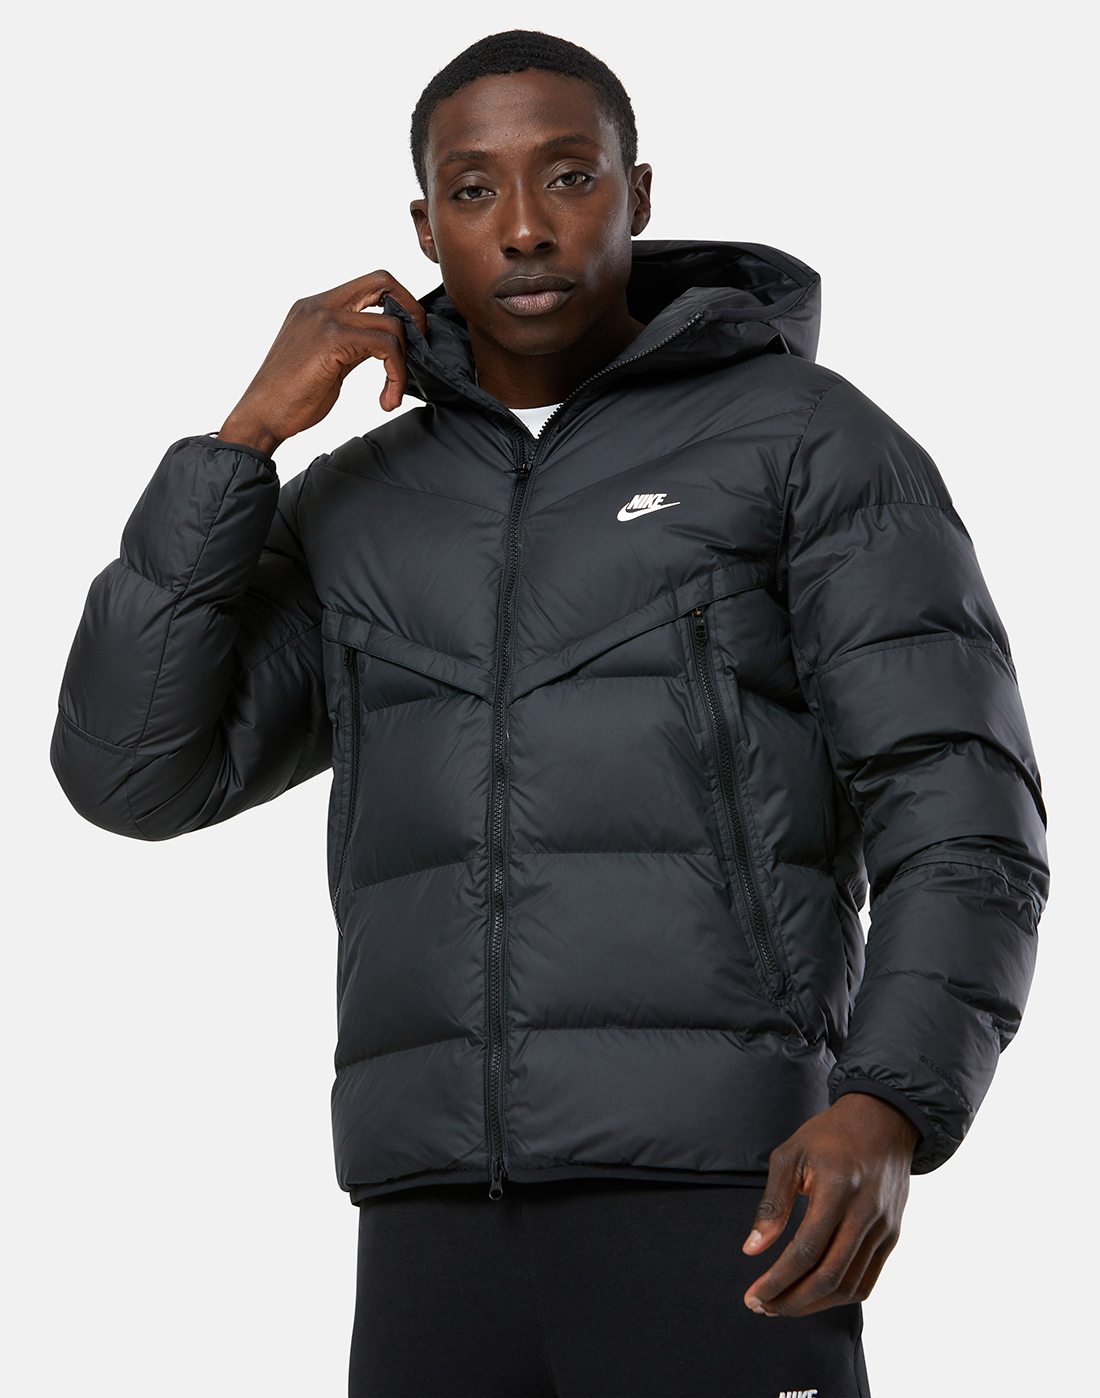 Nike Mens Primaloft Filled Jacket - Black | Life Style Sports UK